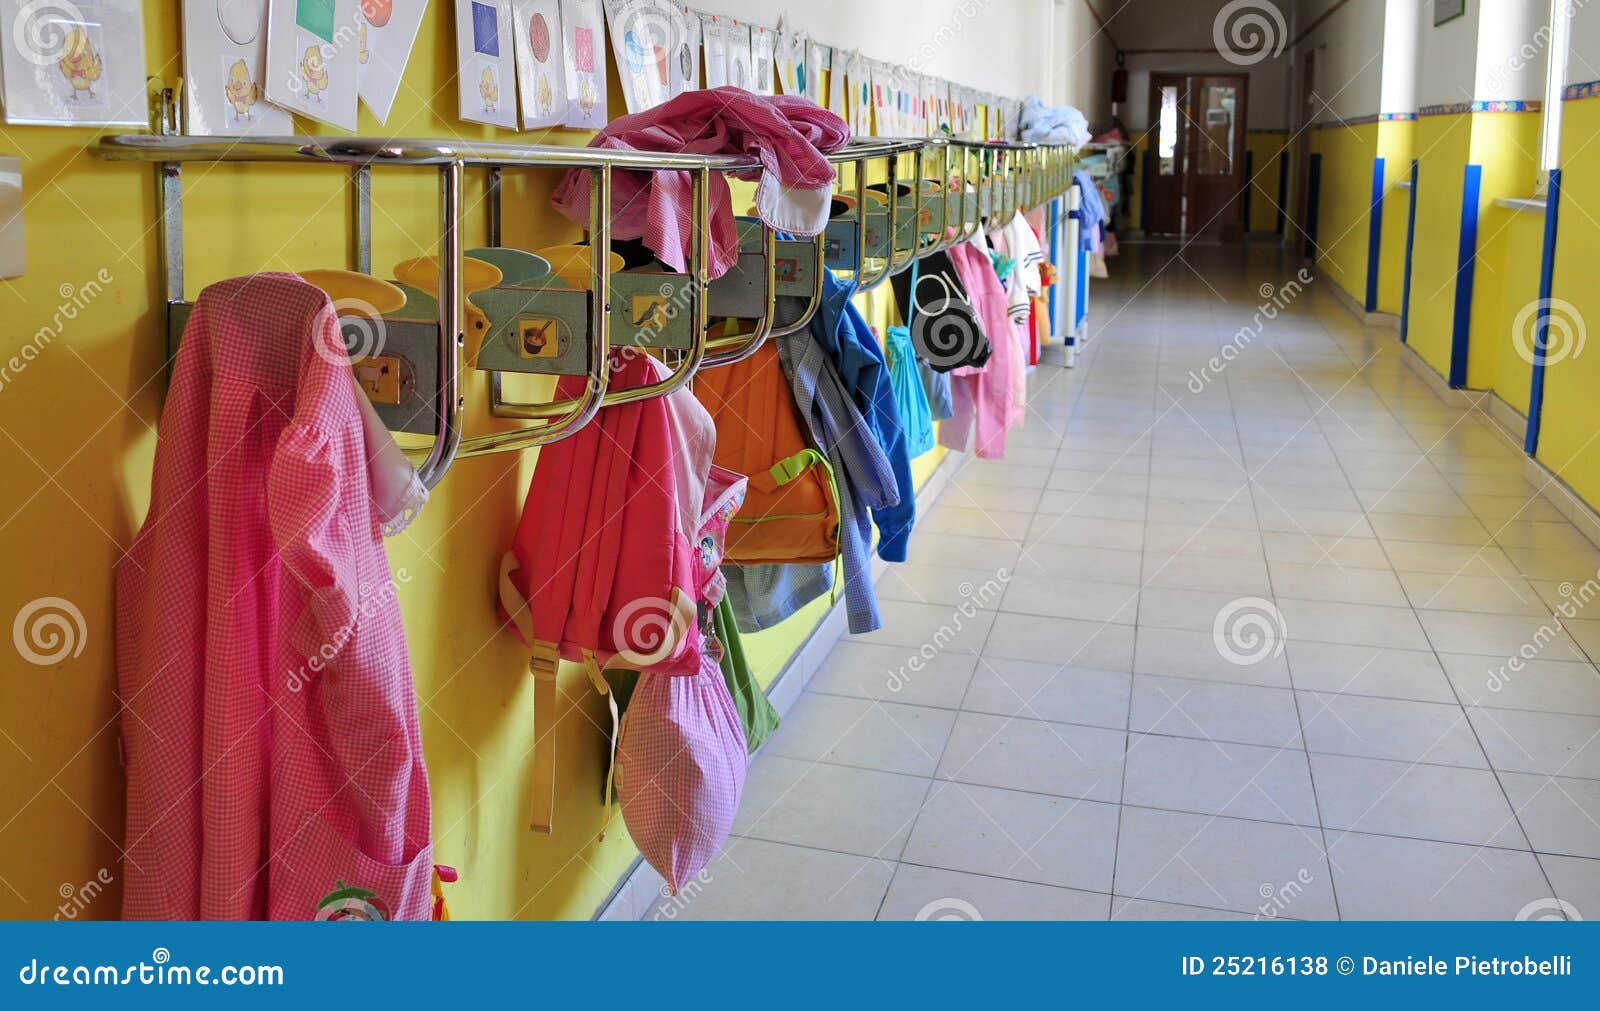 kindergarten, nursery school